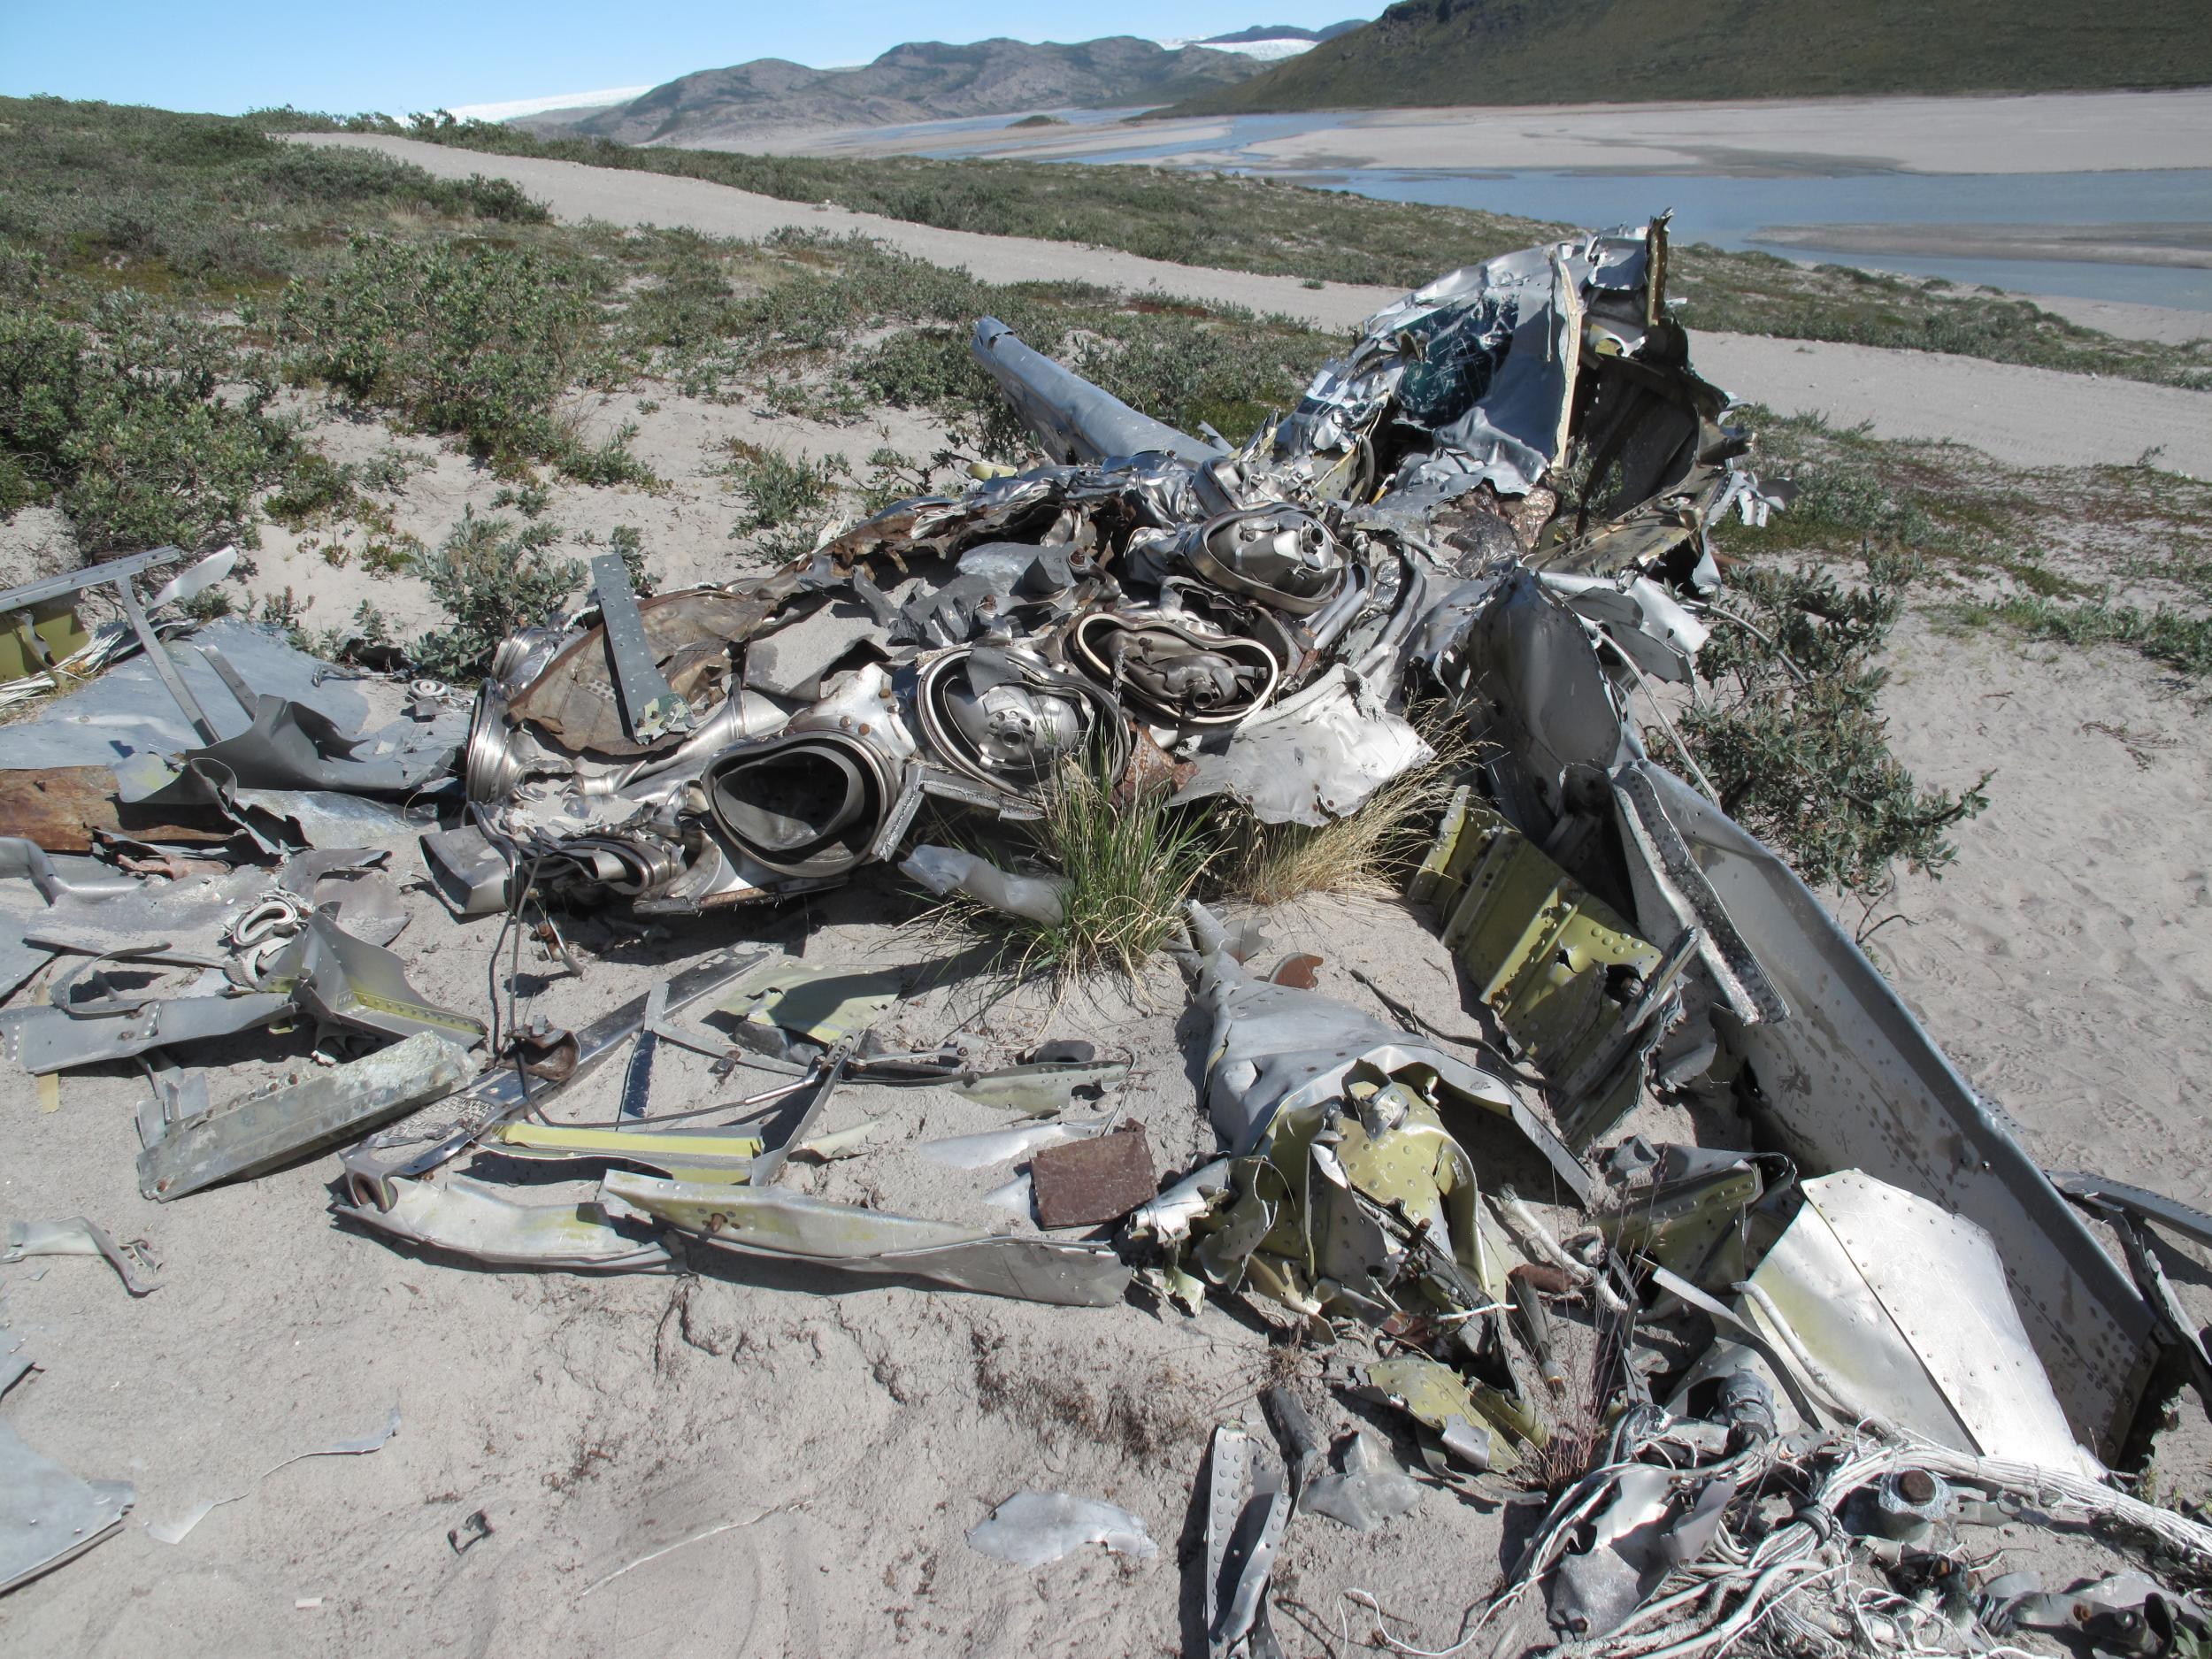 Wreckage from a warplane in Kangerlussuaq